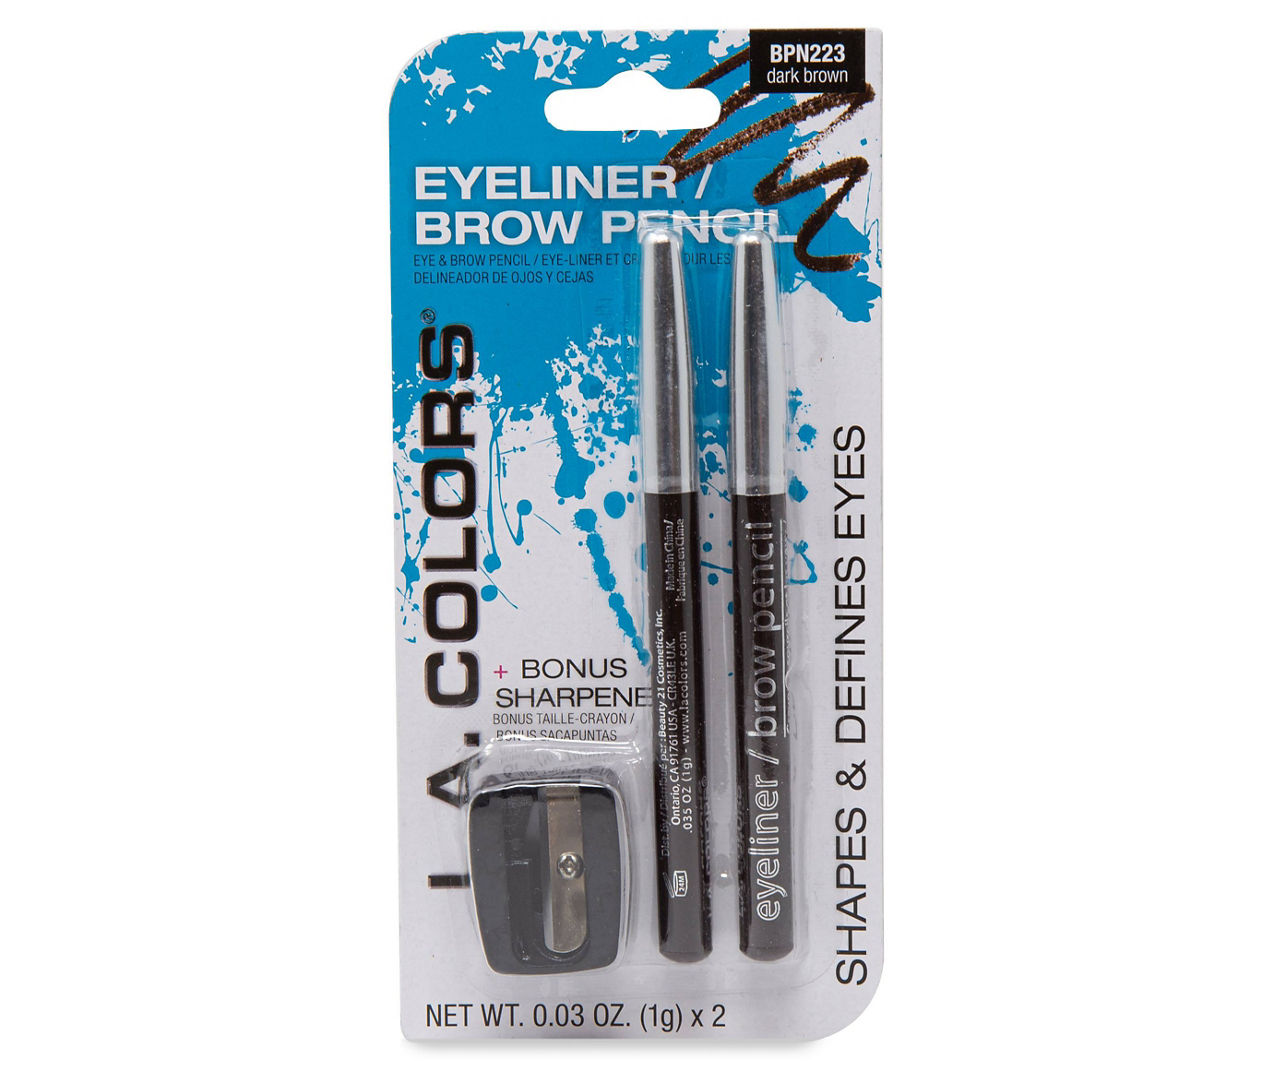 Dark Brown Eyeliner/Brow Pencil, 2-Pack